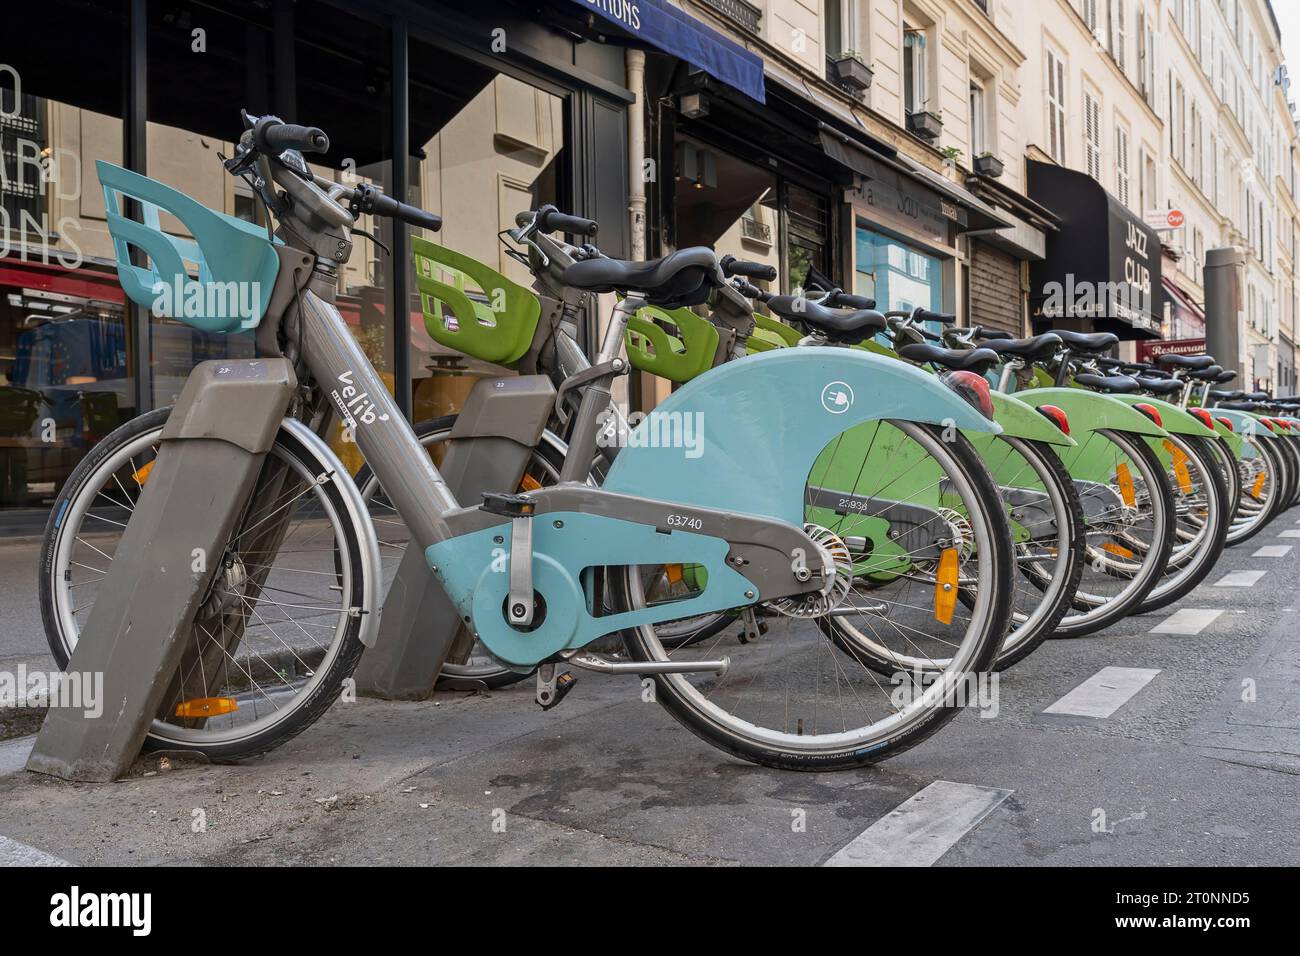 Velib Fahrradverleih Dockingstation. Fahrrad-Sharing-System. Fahrräder verschlossen, hintereinander geparkt. Ökologischer Alternativverkehr. Paris, Frankreich, Europa Stockfoto